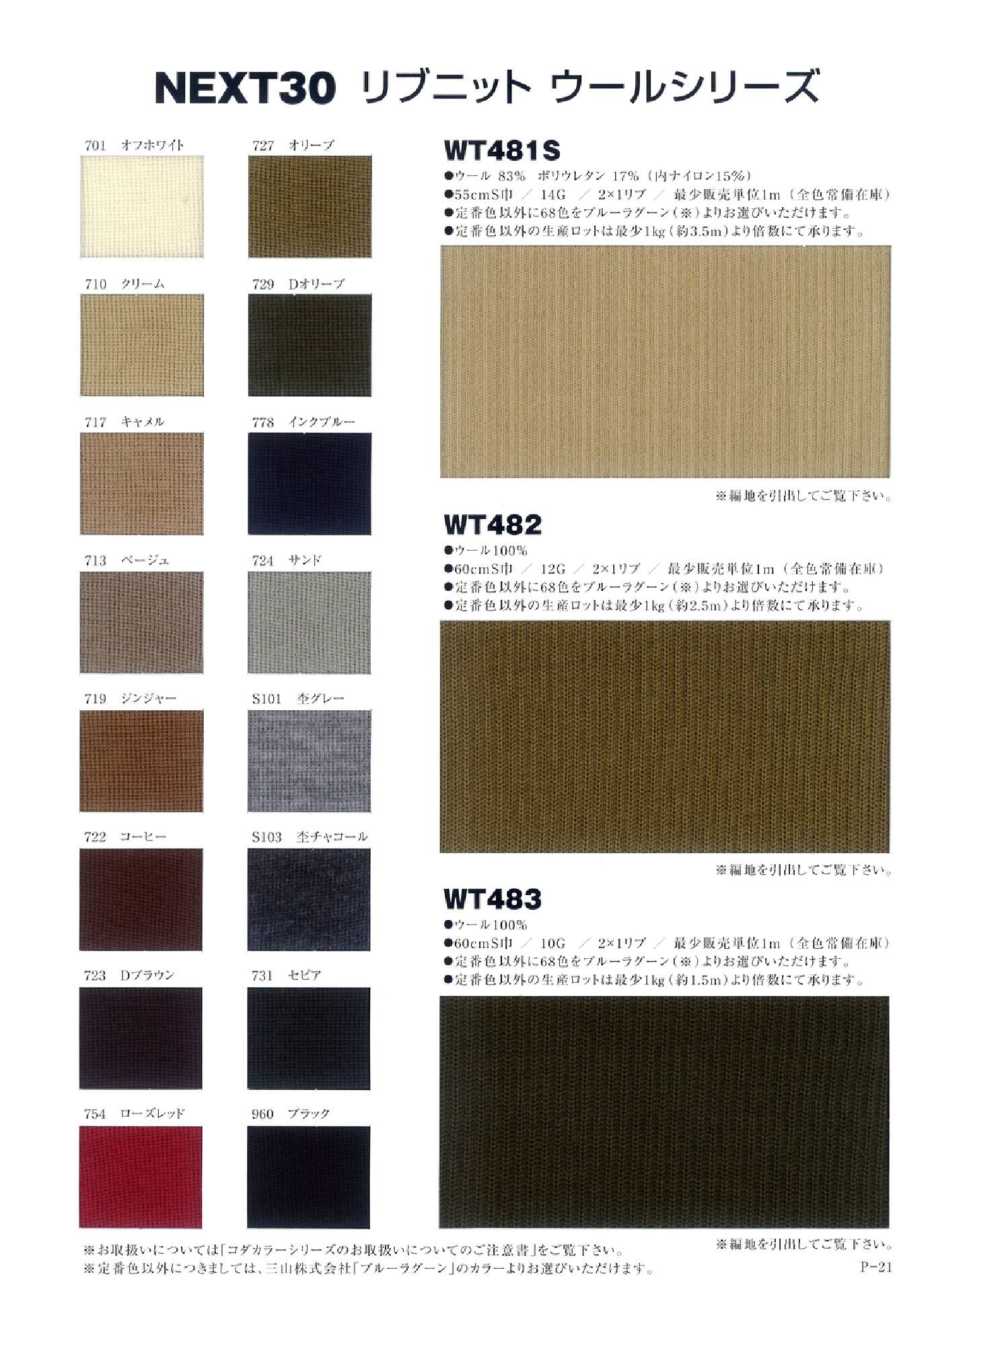 WT483 2/48 Wool 2 × 1 Rib Knit NEXT30